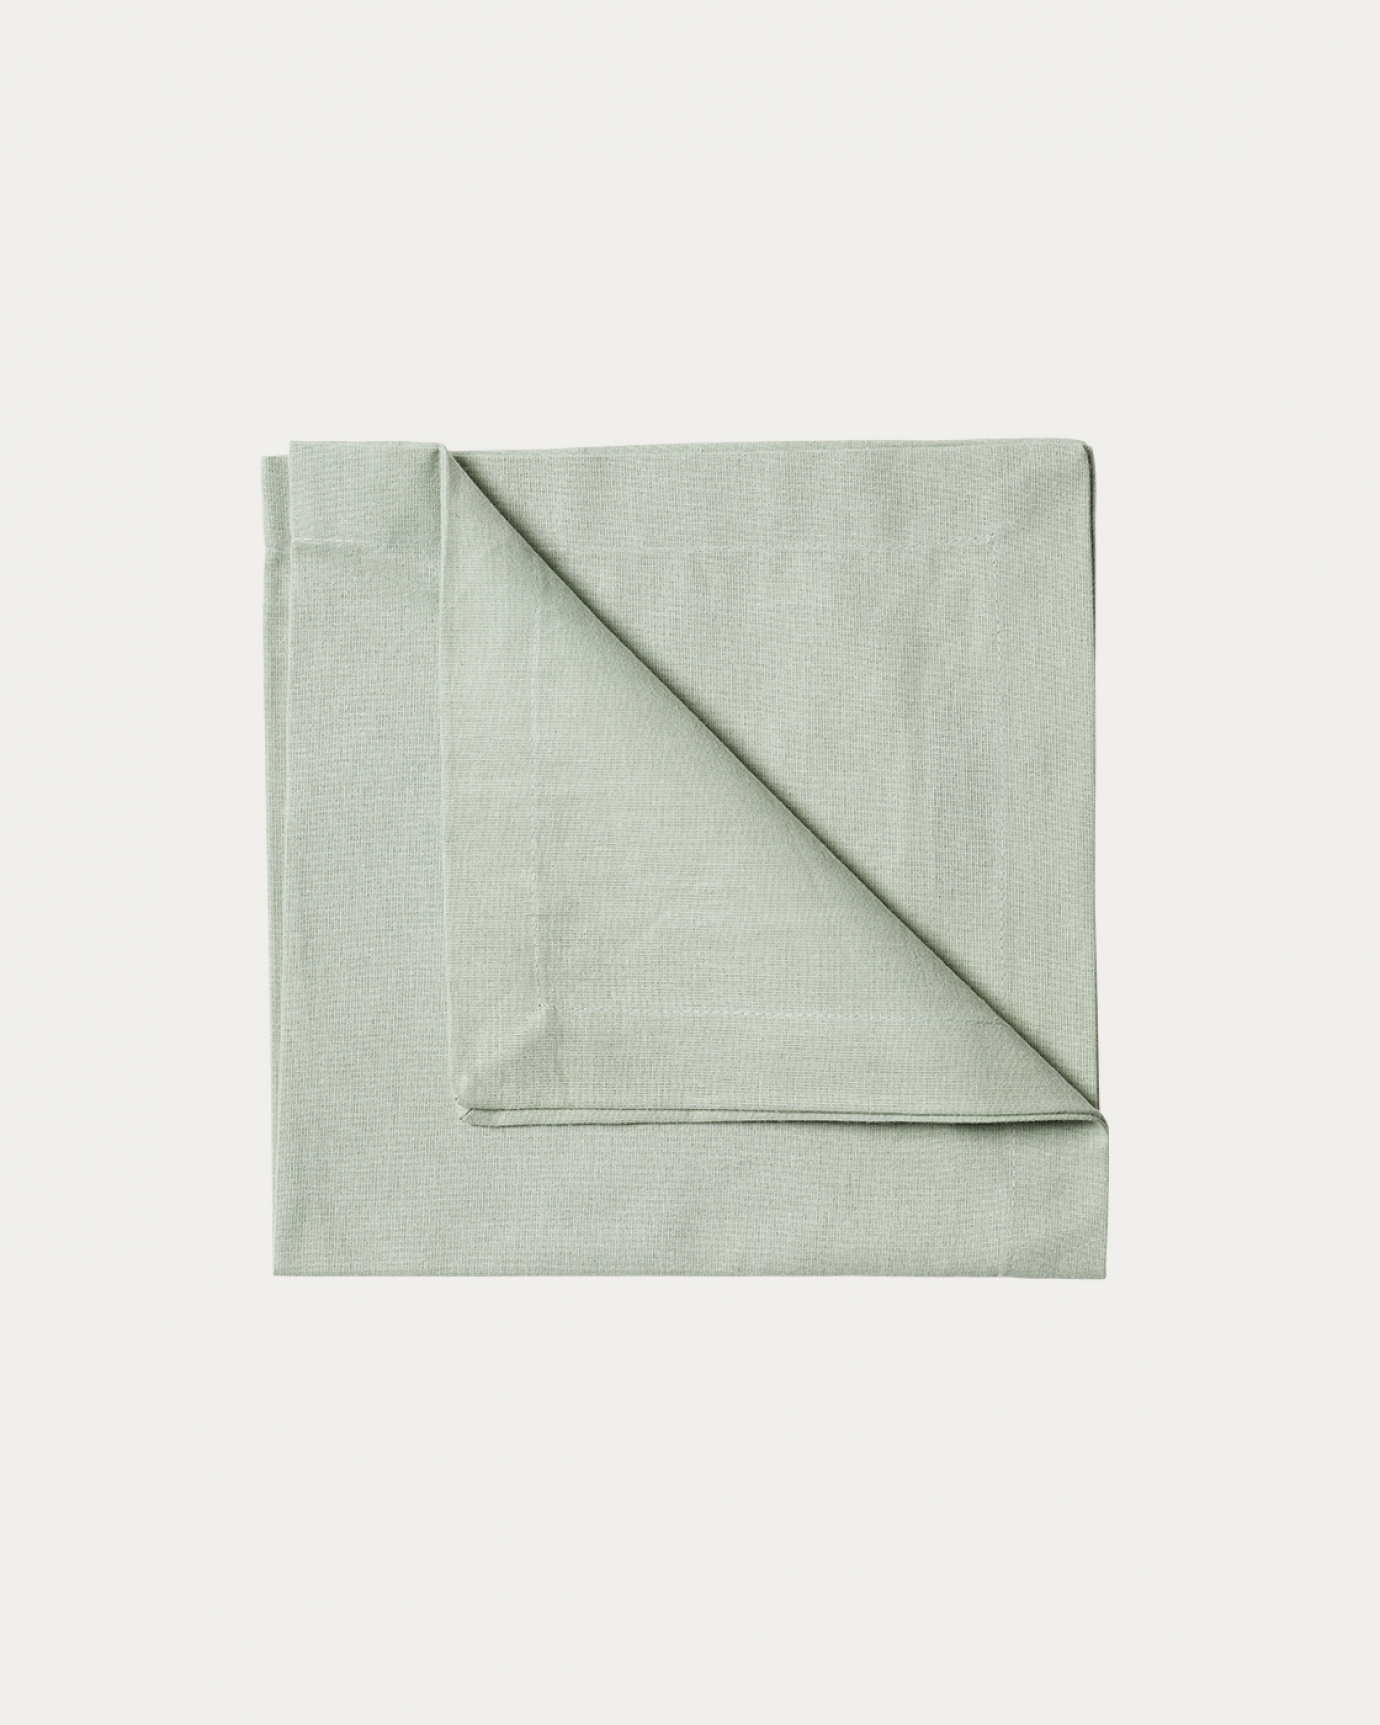 Image du produit serviette de table ROBERT vert clair glacé en coton doux de LINUM DESIGN. Taille 45 x 45 cm et vendu en lot de 4.